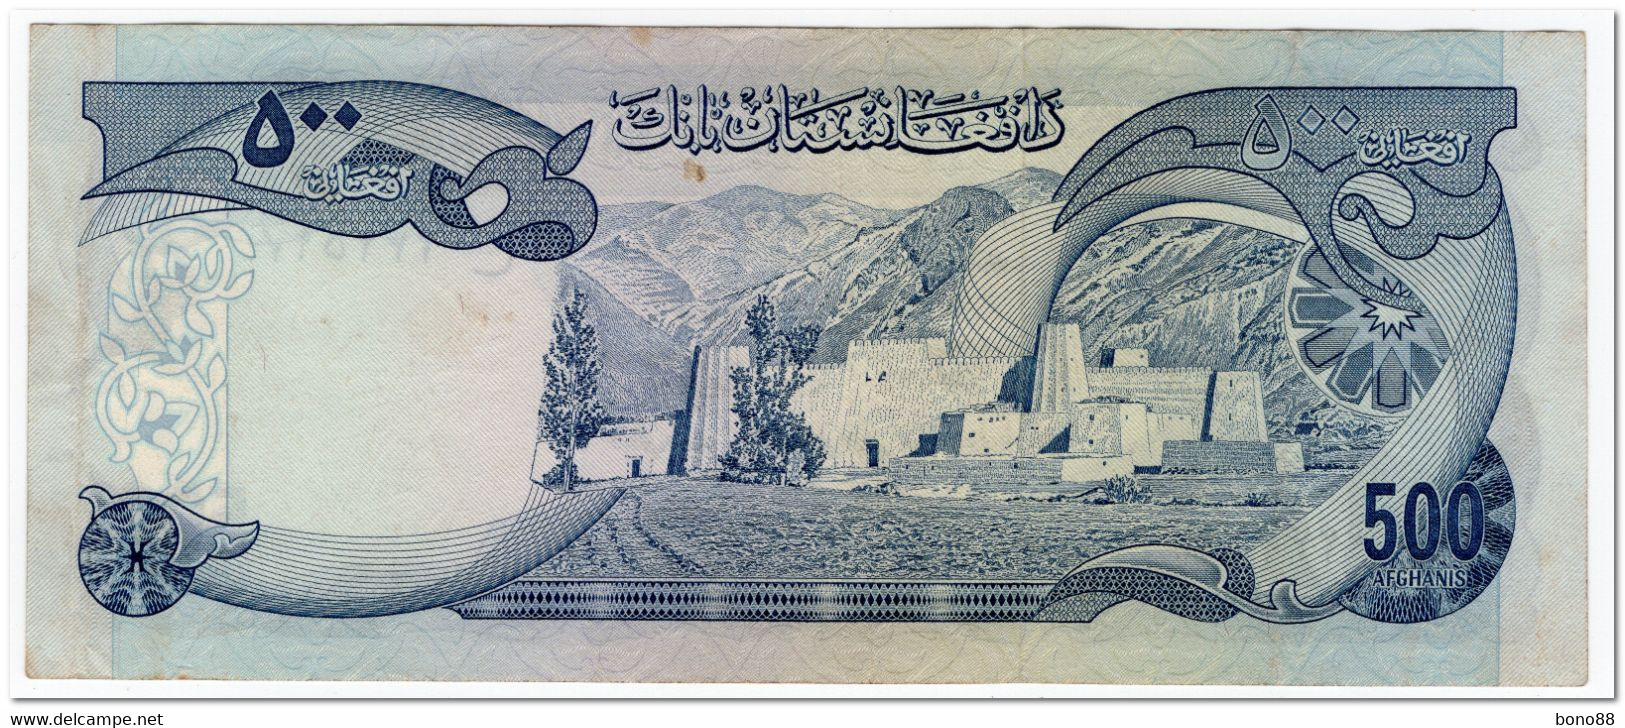 AFGHANISTAN,500 AFGHANIS,1973,P.51,aXF - Afghanistan